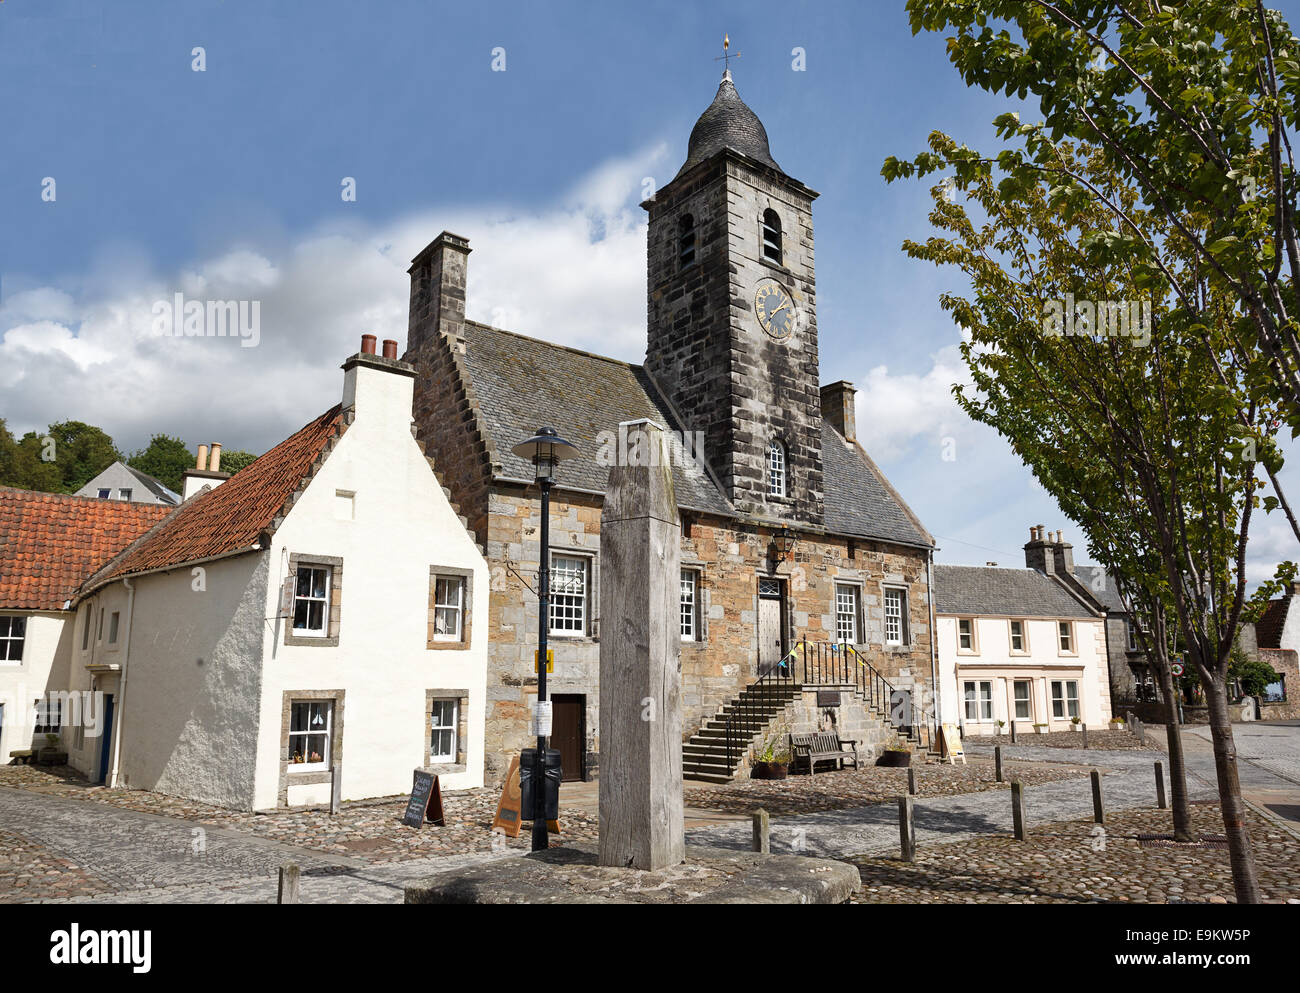 Le village de Culross dans le Fife, en Écosse. Cuileann gaélique : Ros Banque D'Images